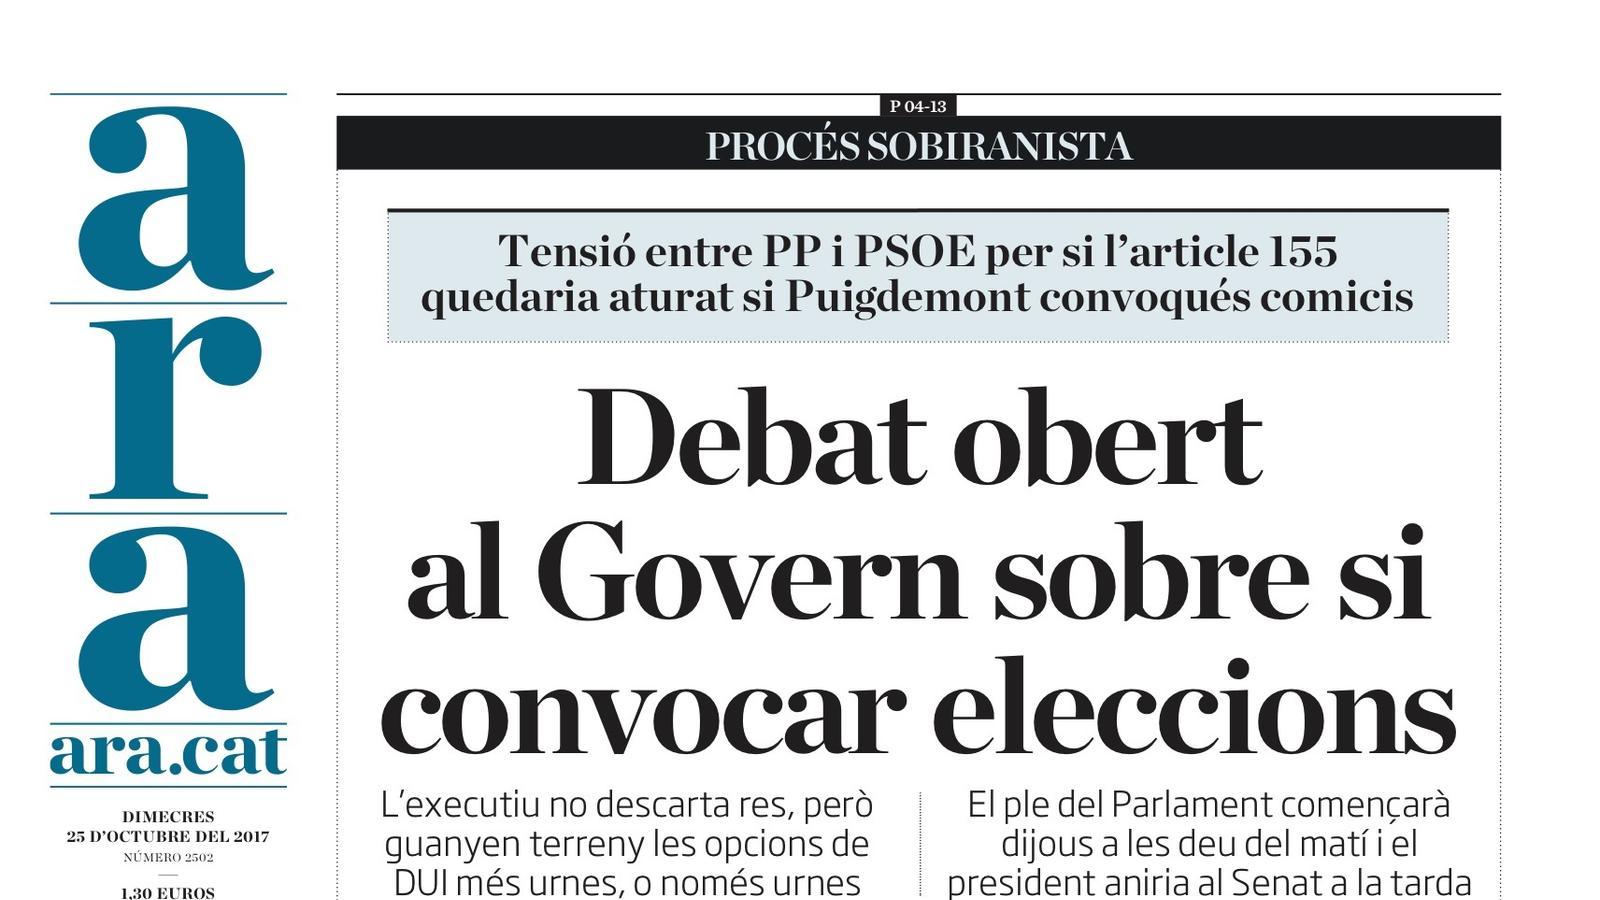 "Debat obert al Govern sobre si convocar eleccions", la portada de l'ARA